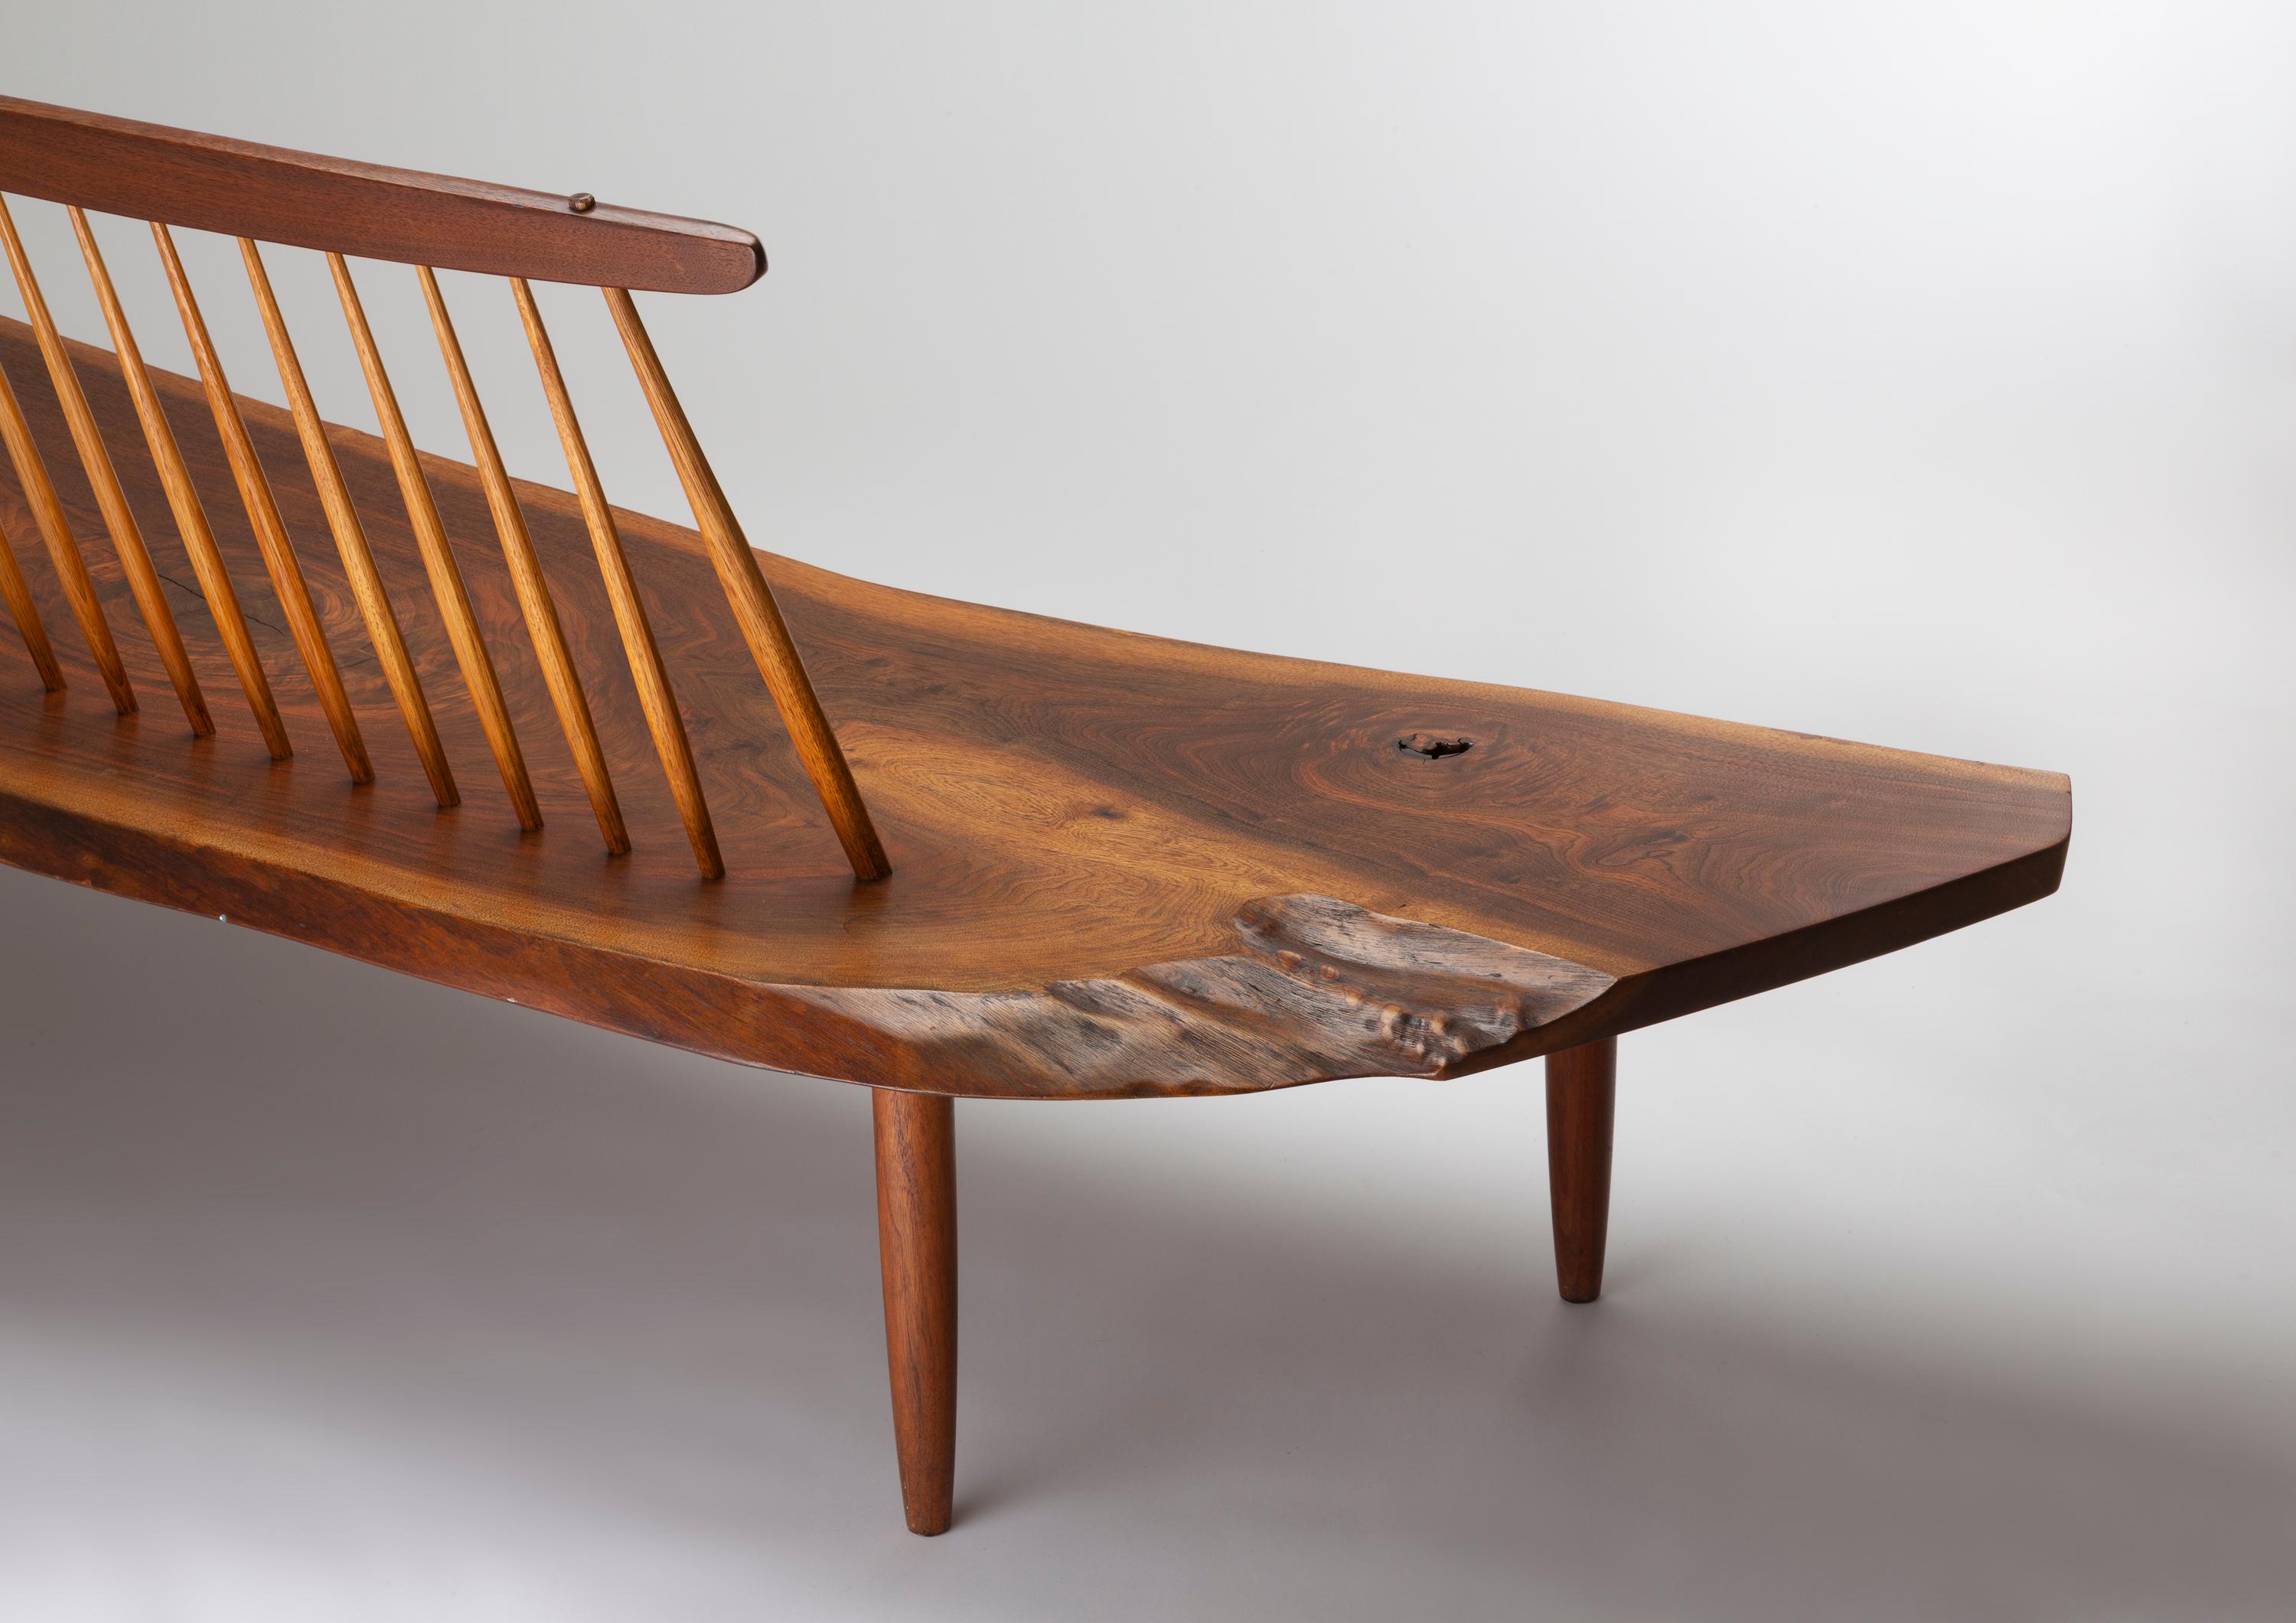 American Craftsman George Nakashima Conoid Bench, 1965